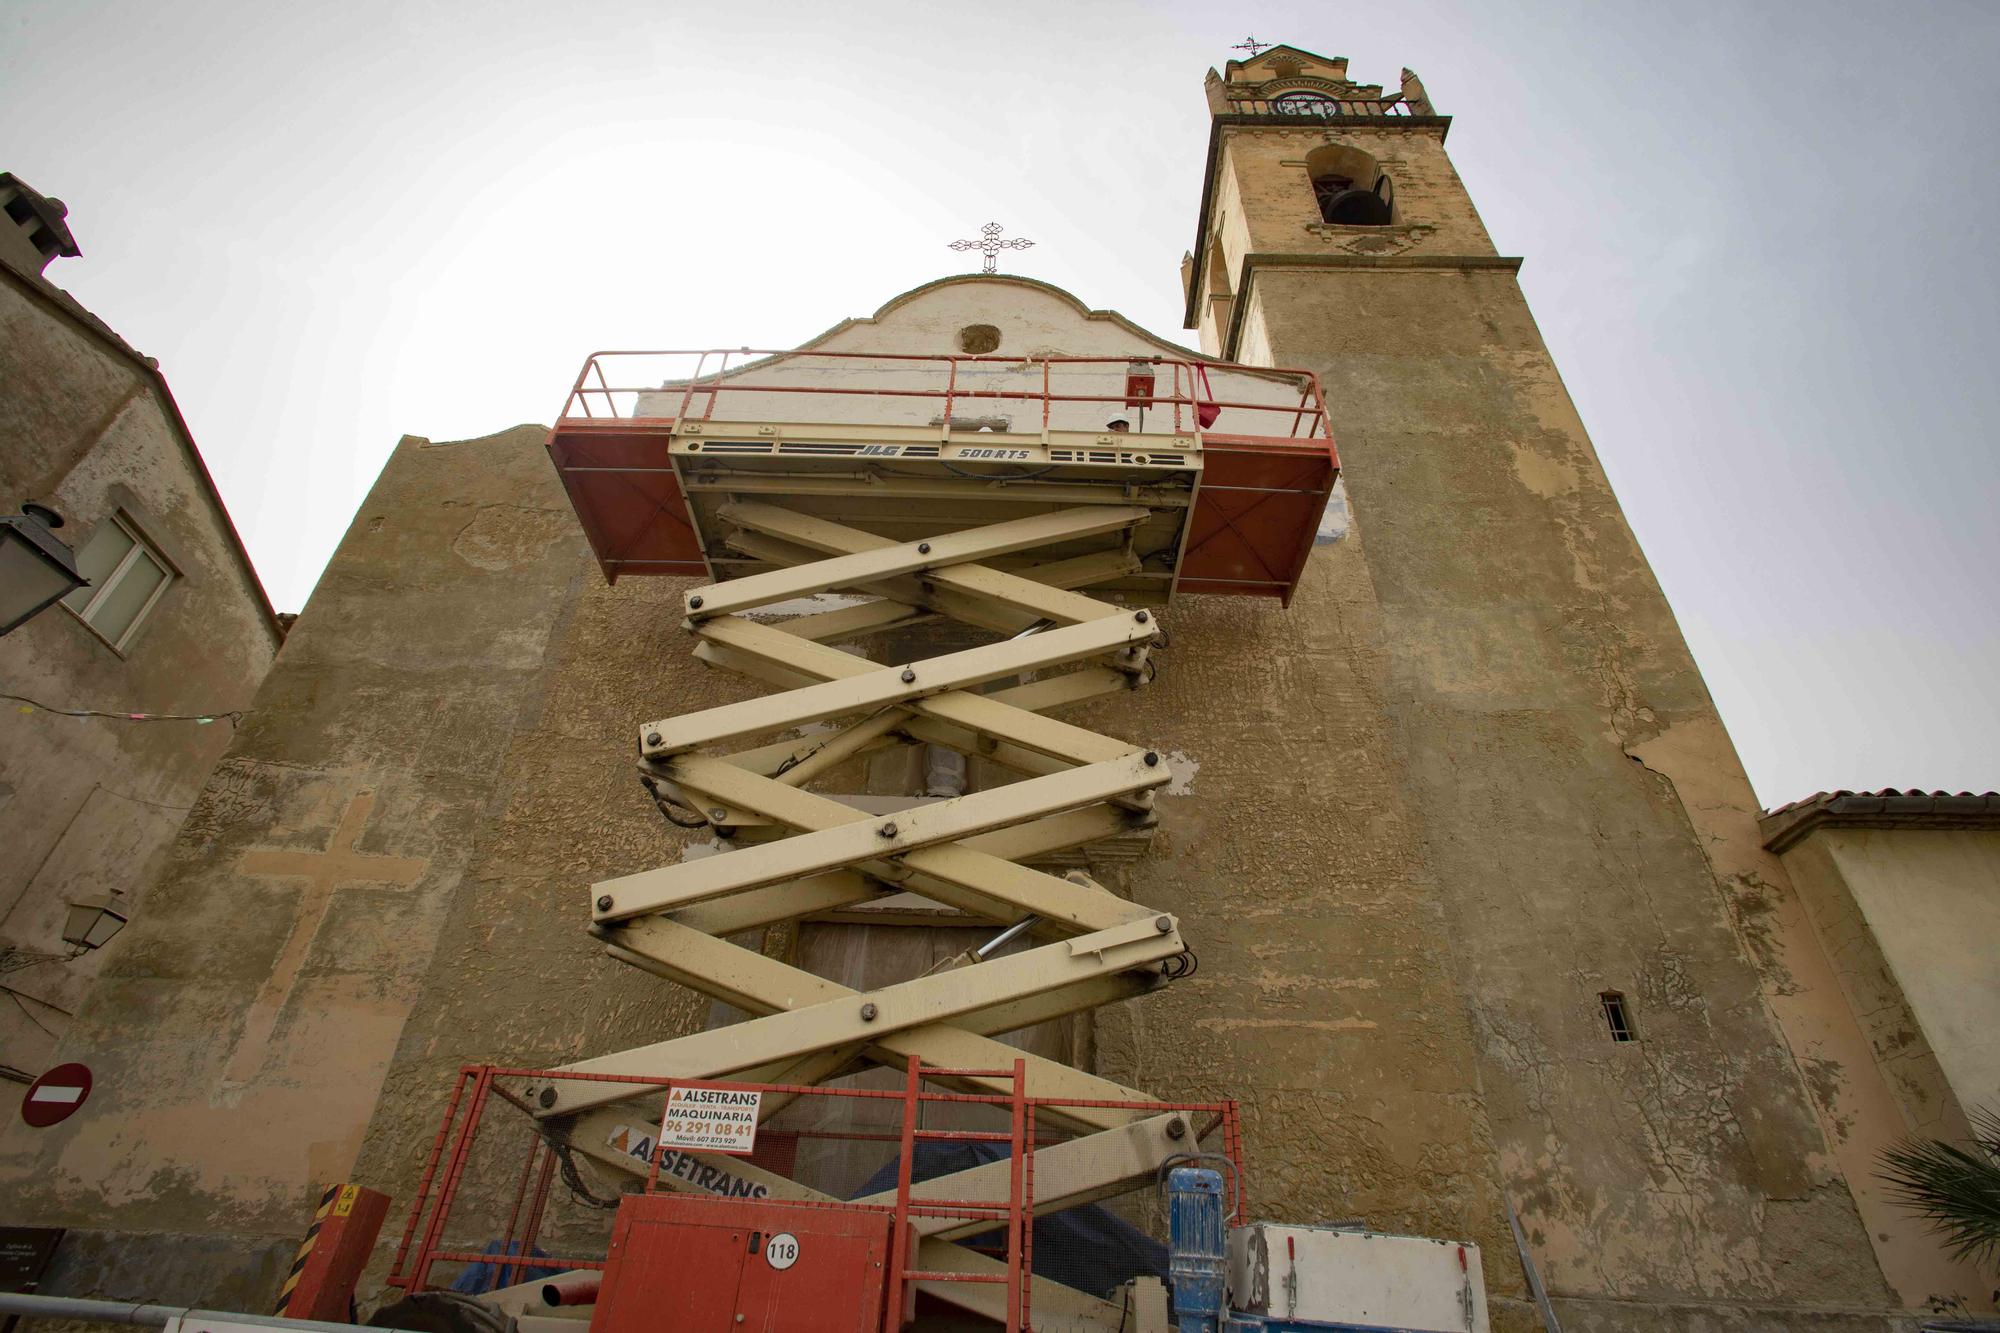 Rehabilitan la fachada y el campanario de la iglesia de Otos gracias a las aportaciones de los feligreses